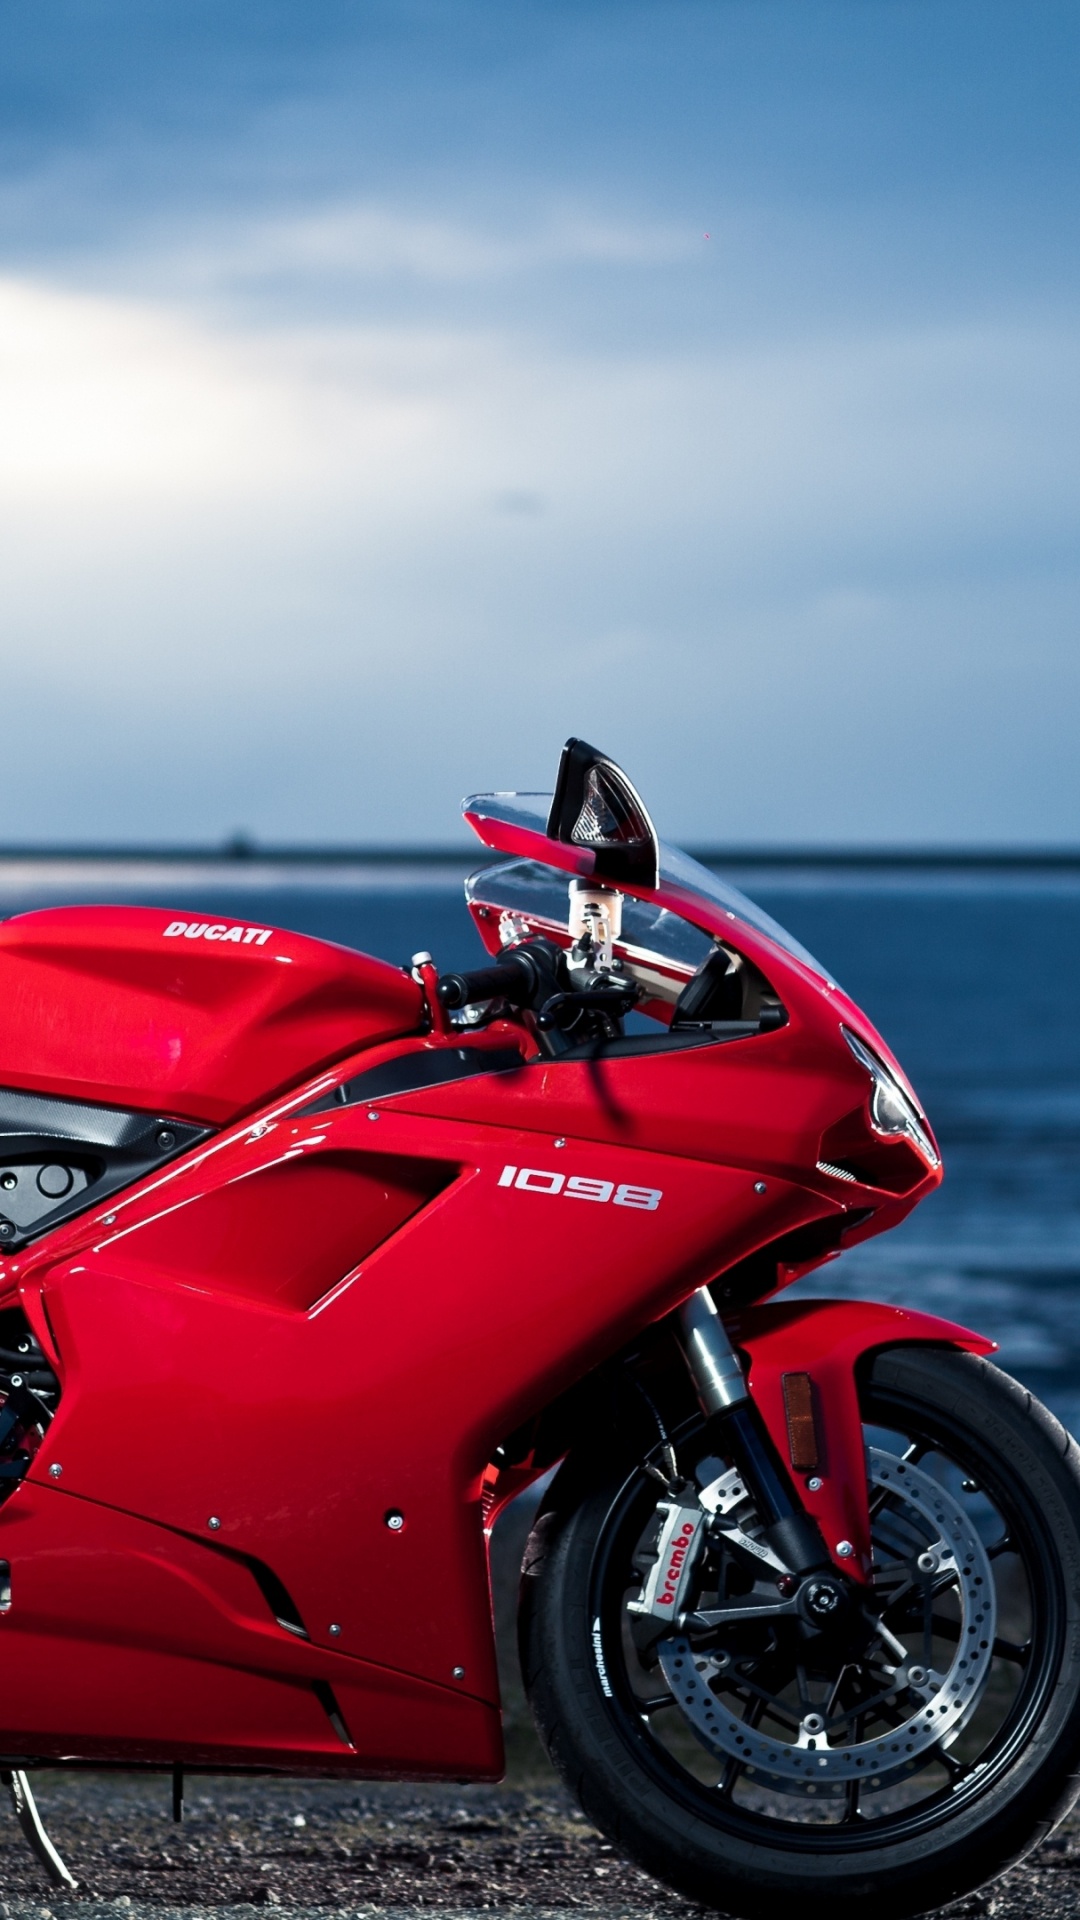 Обои дукати 1098, ducati, мотоцикл, красный цвет, авто в разрешении 1080x1920